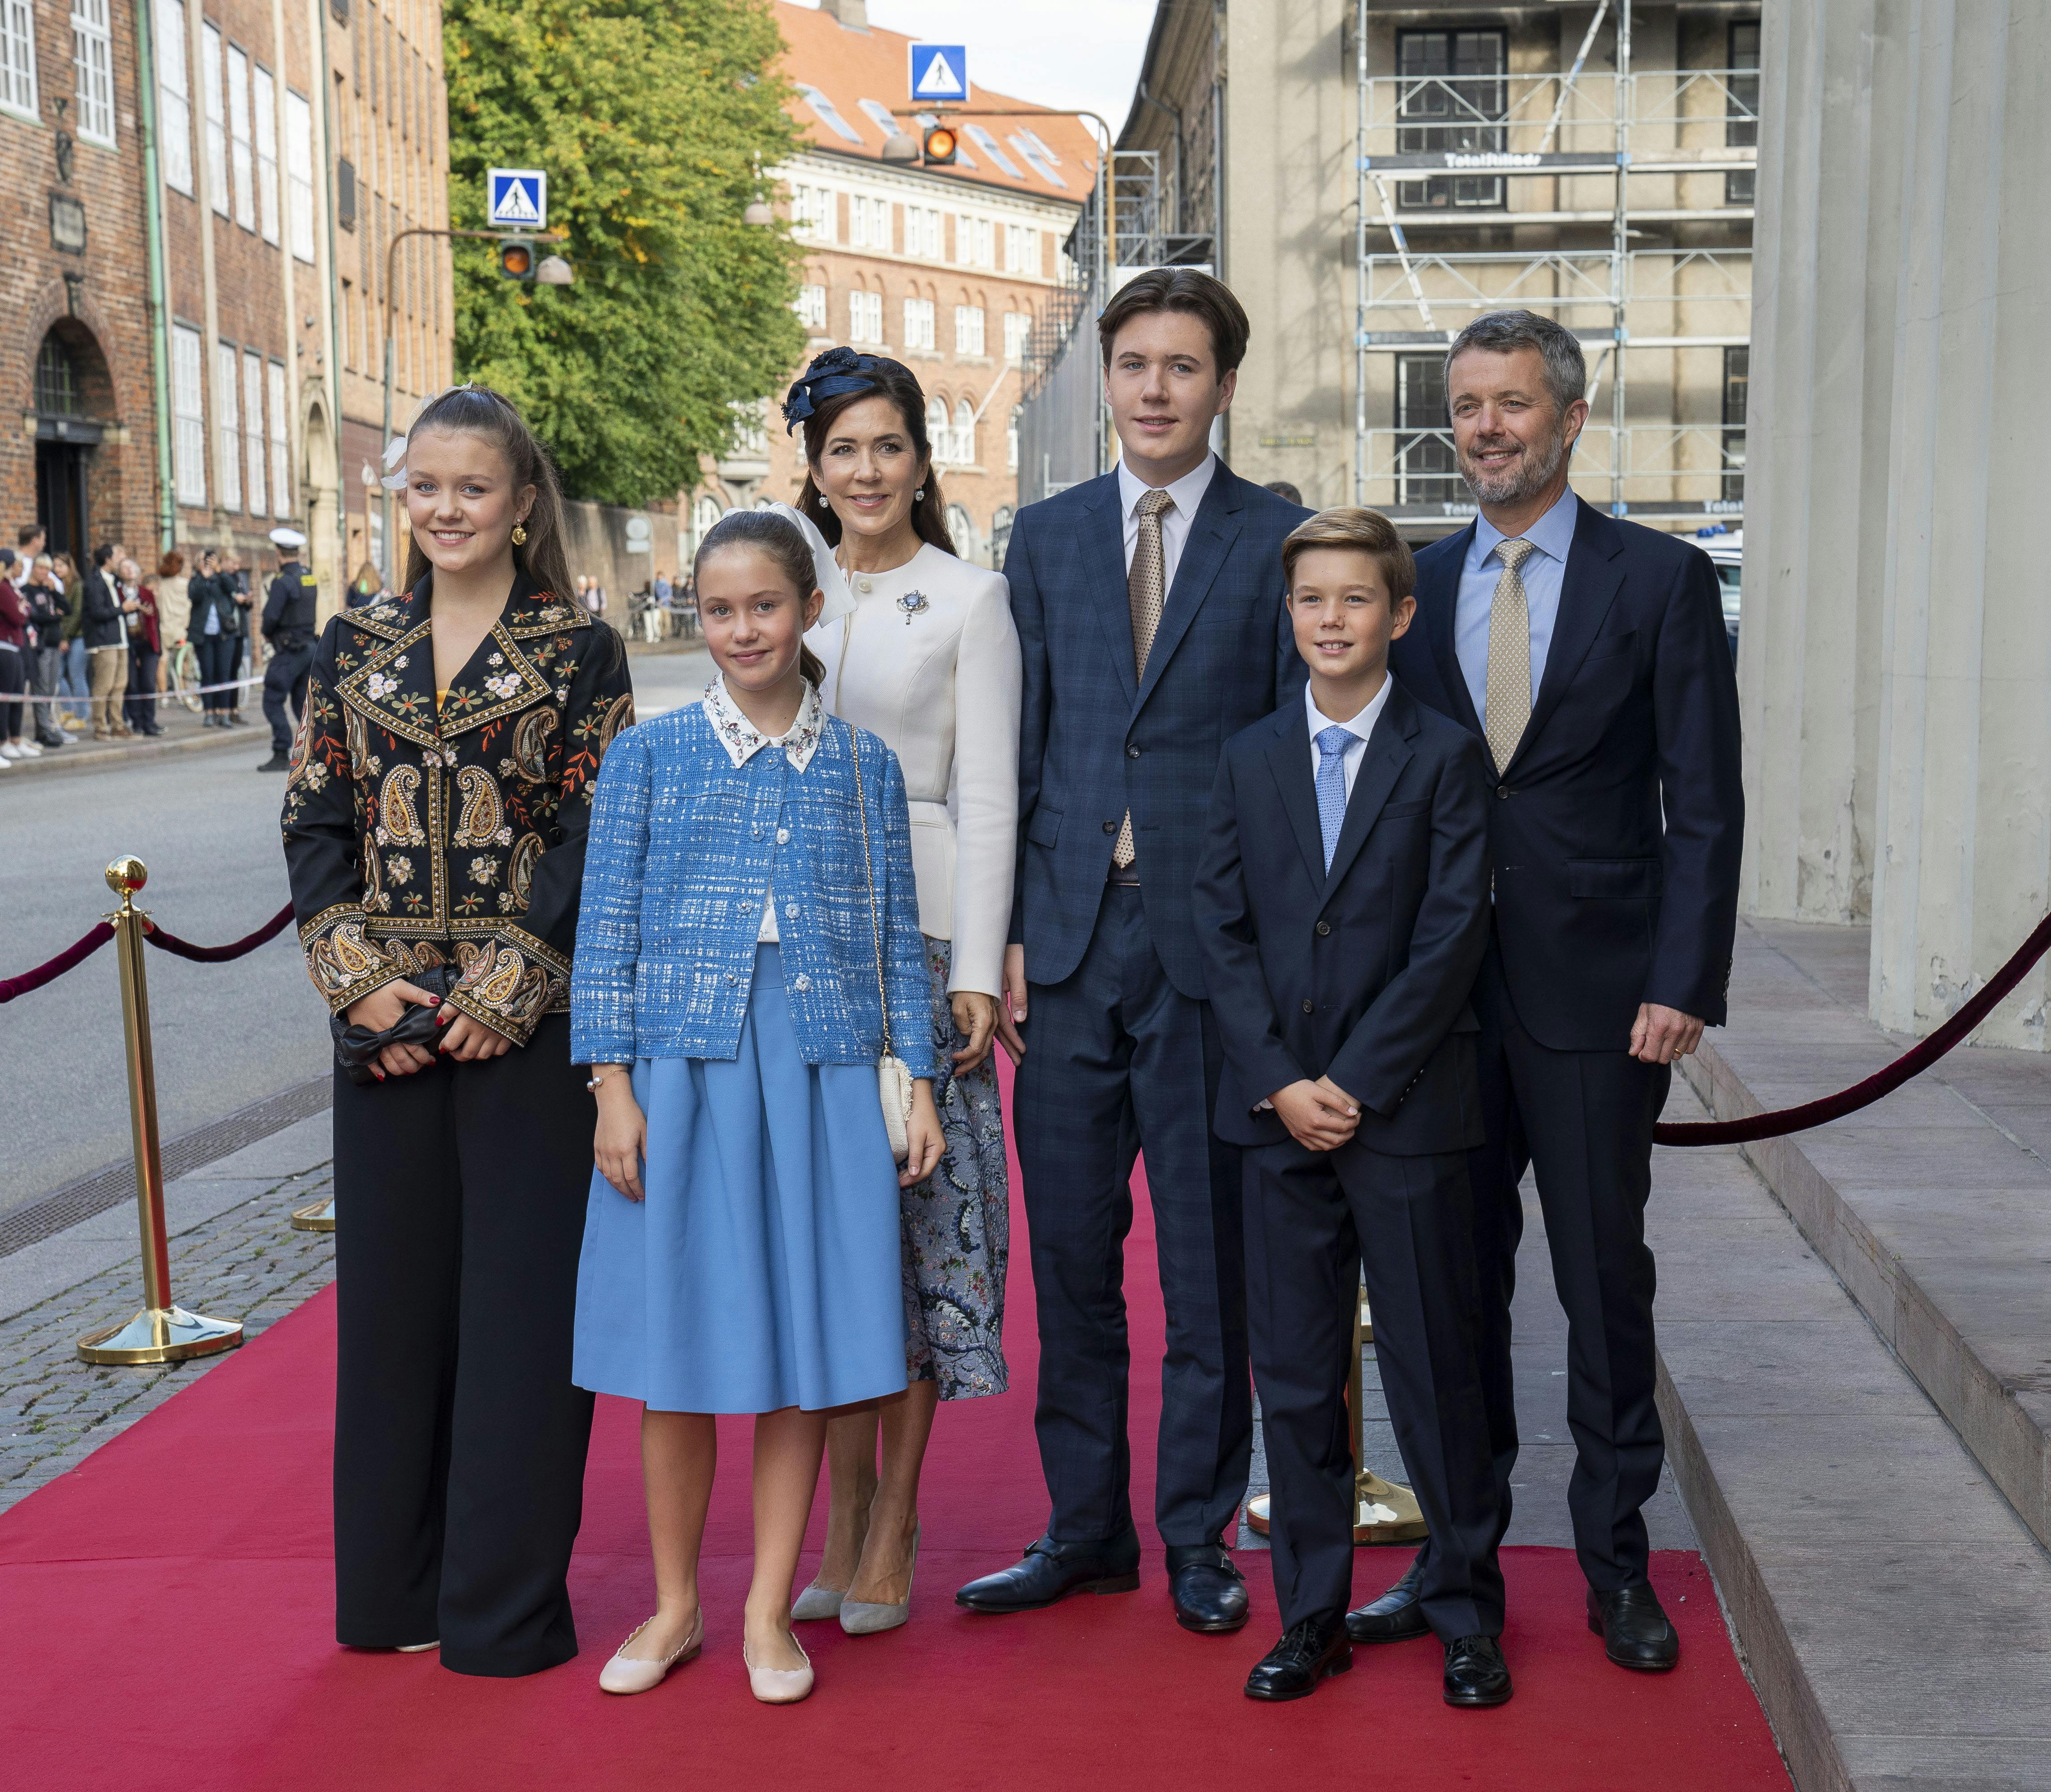 skåner dronning Margrethe kronprinsens børn | SE og